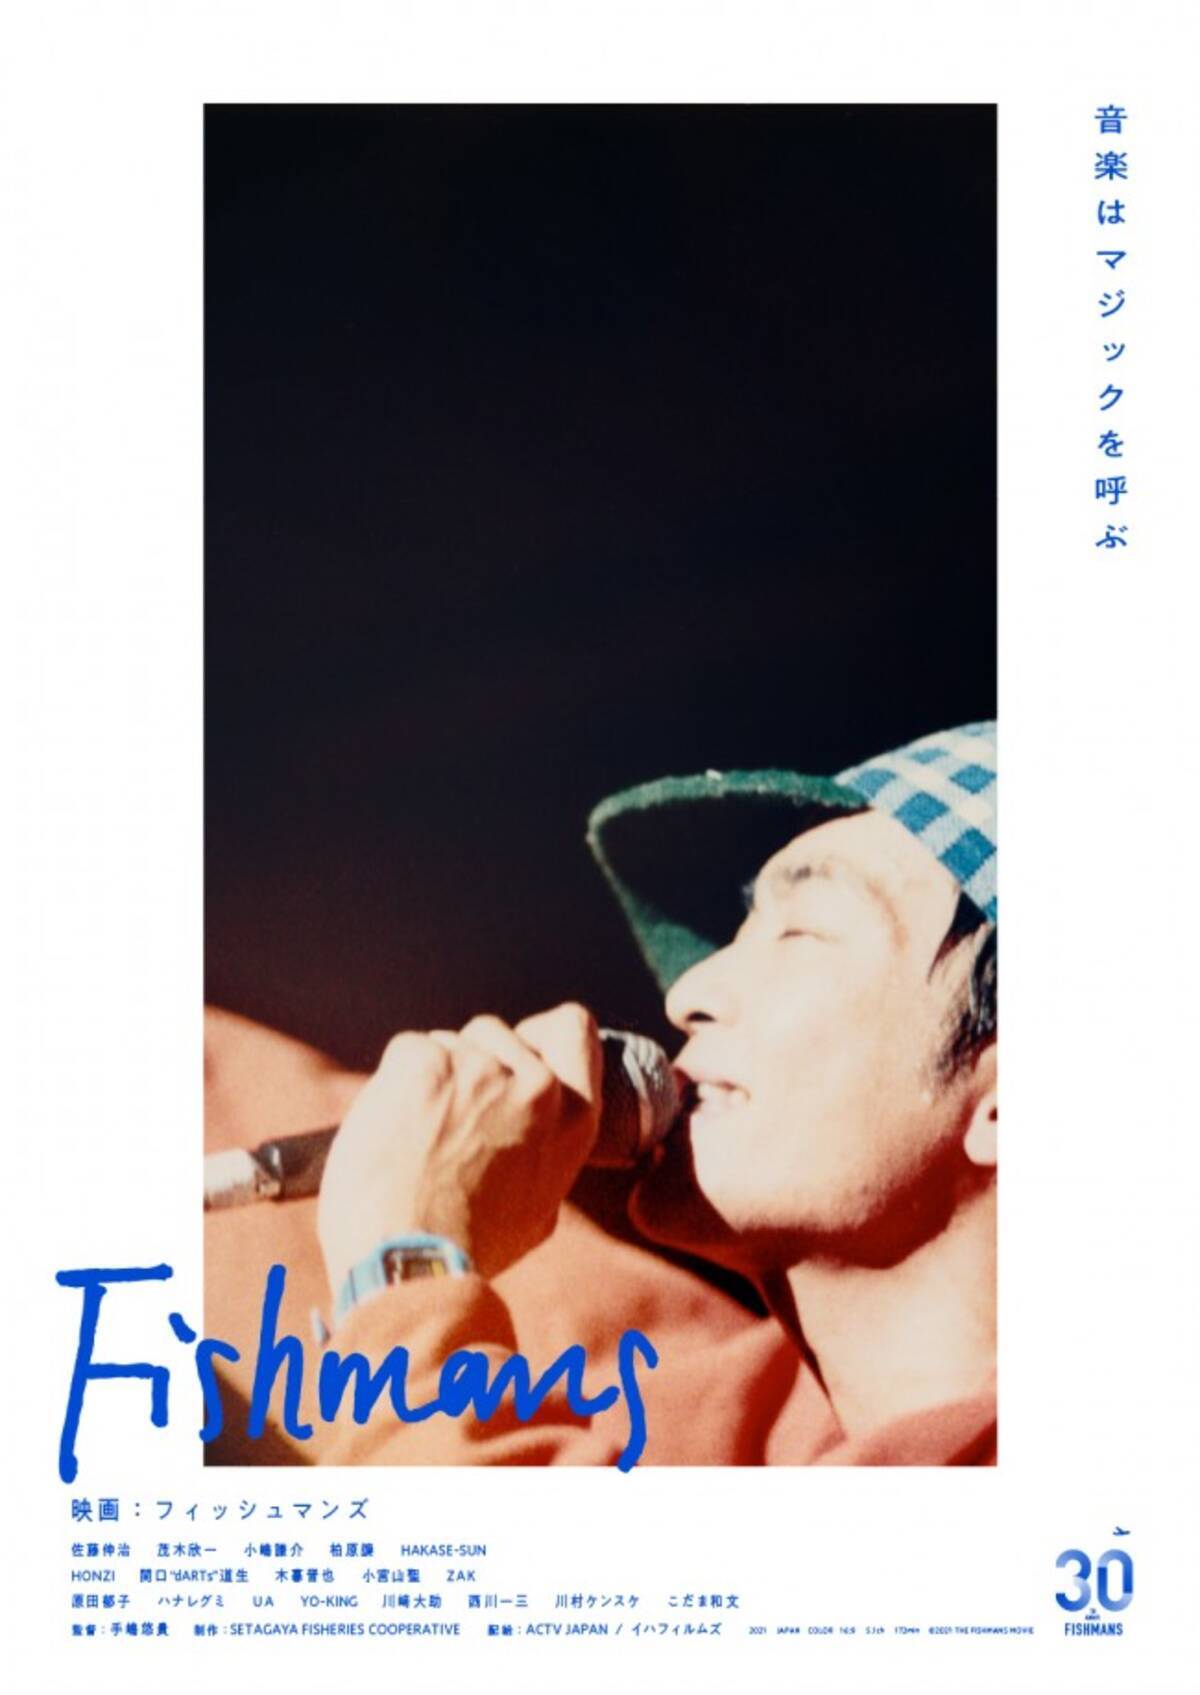 バンド Fishmans のすべてがここに 映画 フィッシュマンズ ポスター ティザー予告解禁 21年4月21日 エキサイトニュース